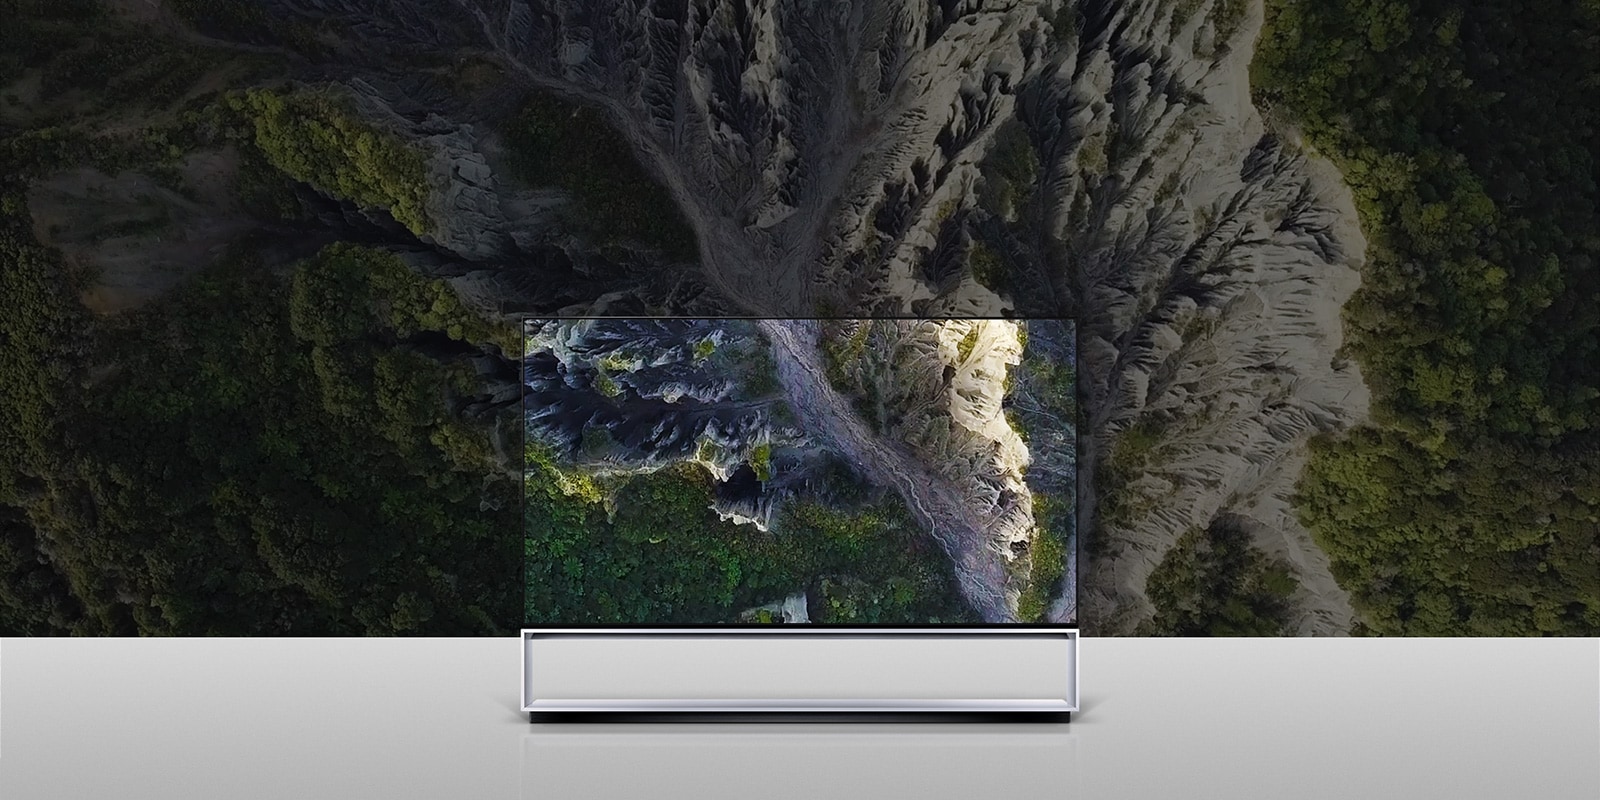 Billede af LG SIGNATURE OLED TV Z9 med skærmen fyldt med en kløft.